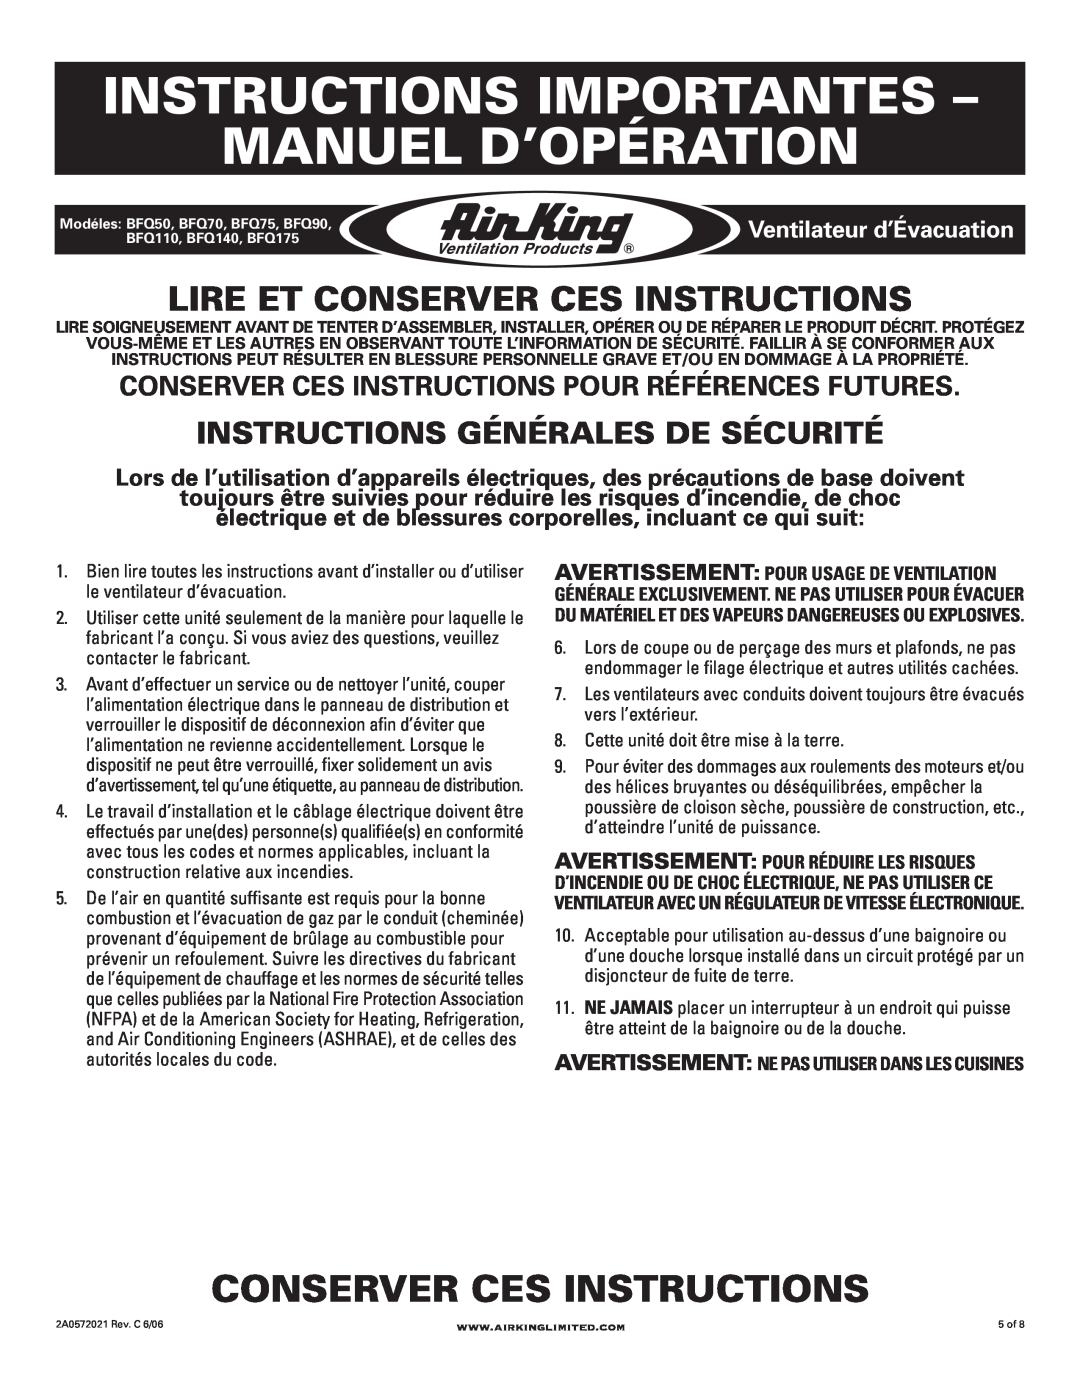 Air King BFQ140, BFQ50 Instructions Importantes - Manuel D’Opération, Conserver Ces Instructions, Ventilateur d’Évacuation 